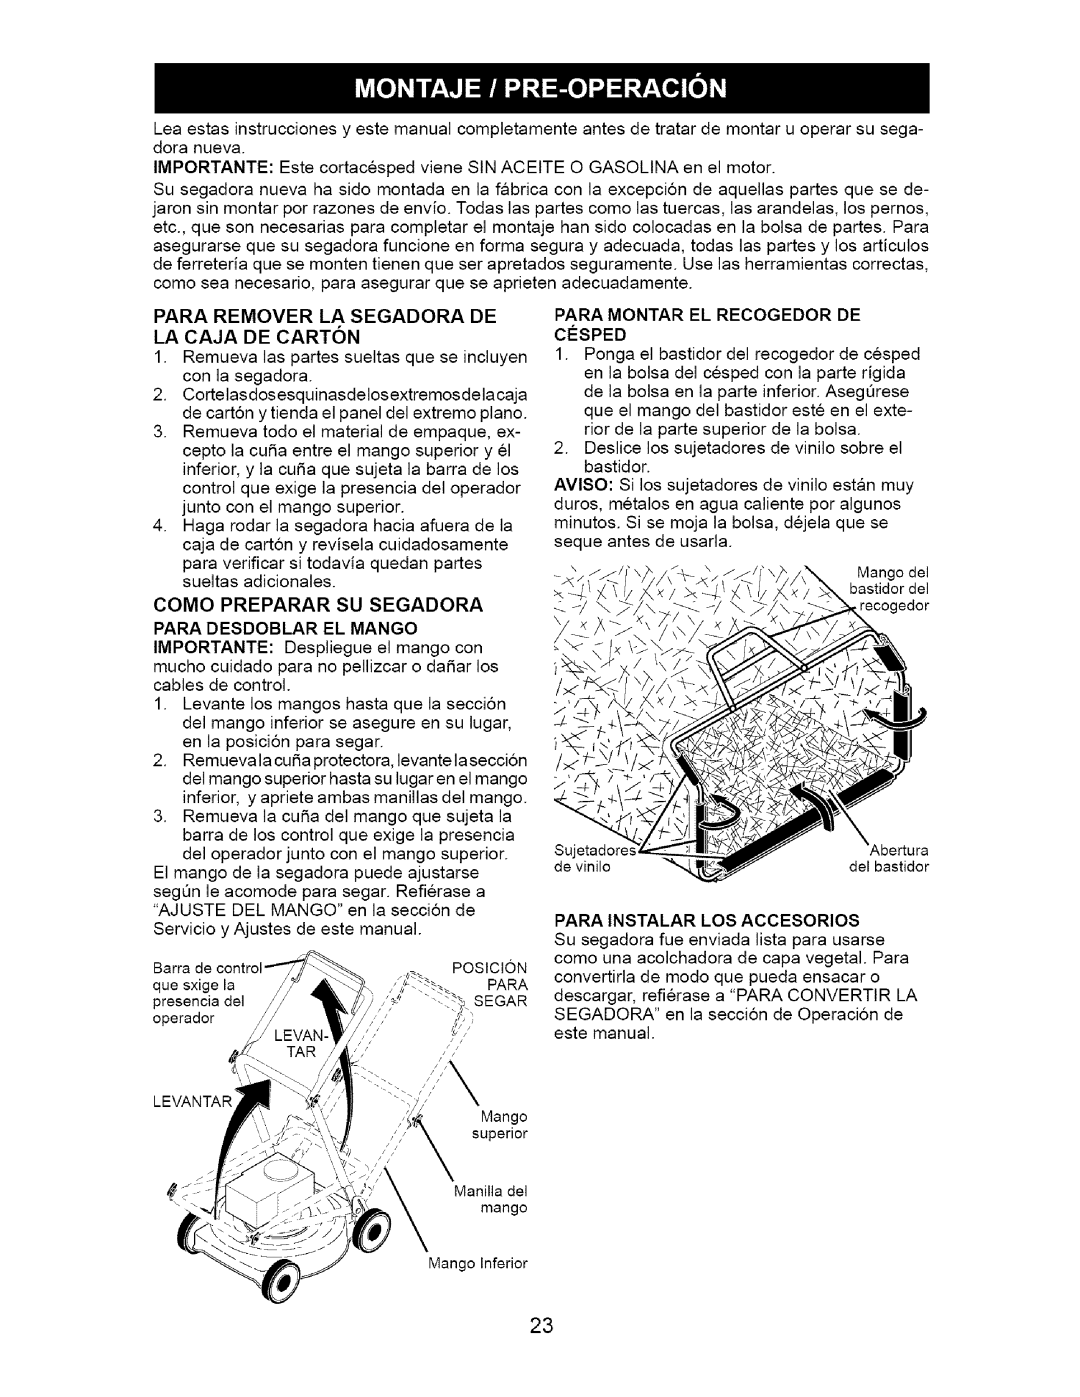 Craftsman 917.376671 owner manual Para Remover La Segadora De La Caja De Carton, Para Desdoblar El Mango 